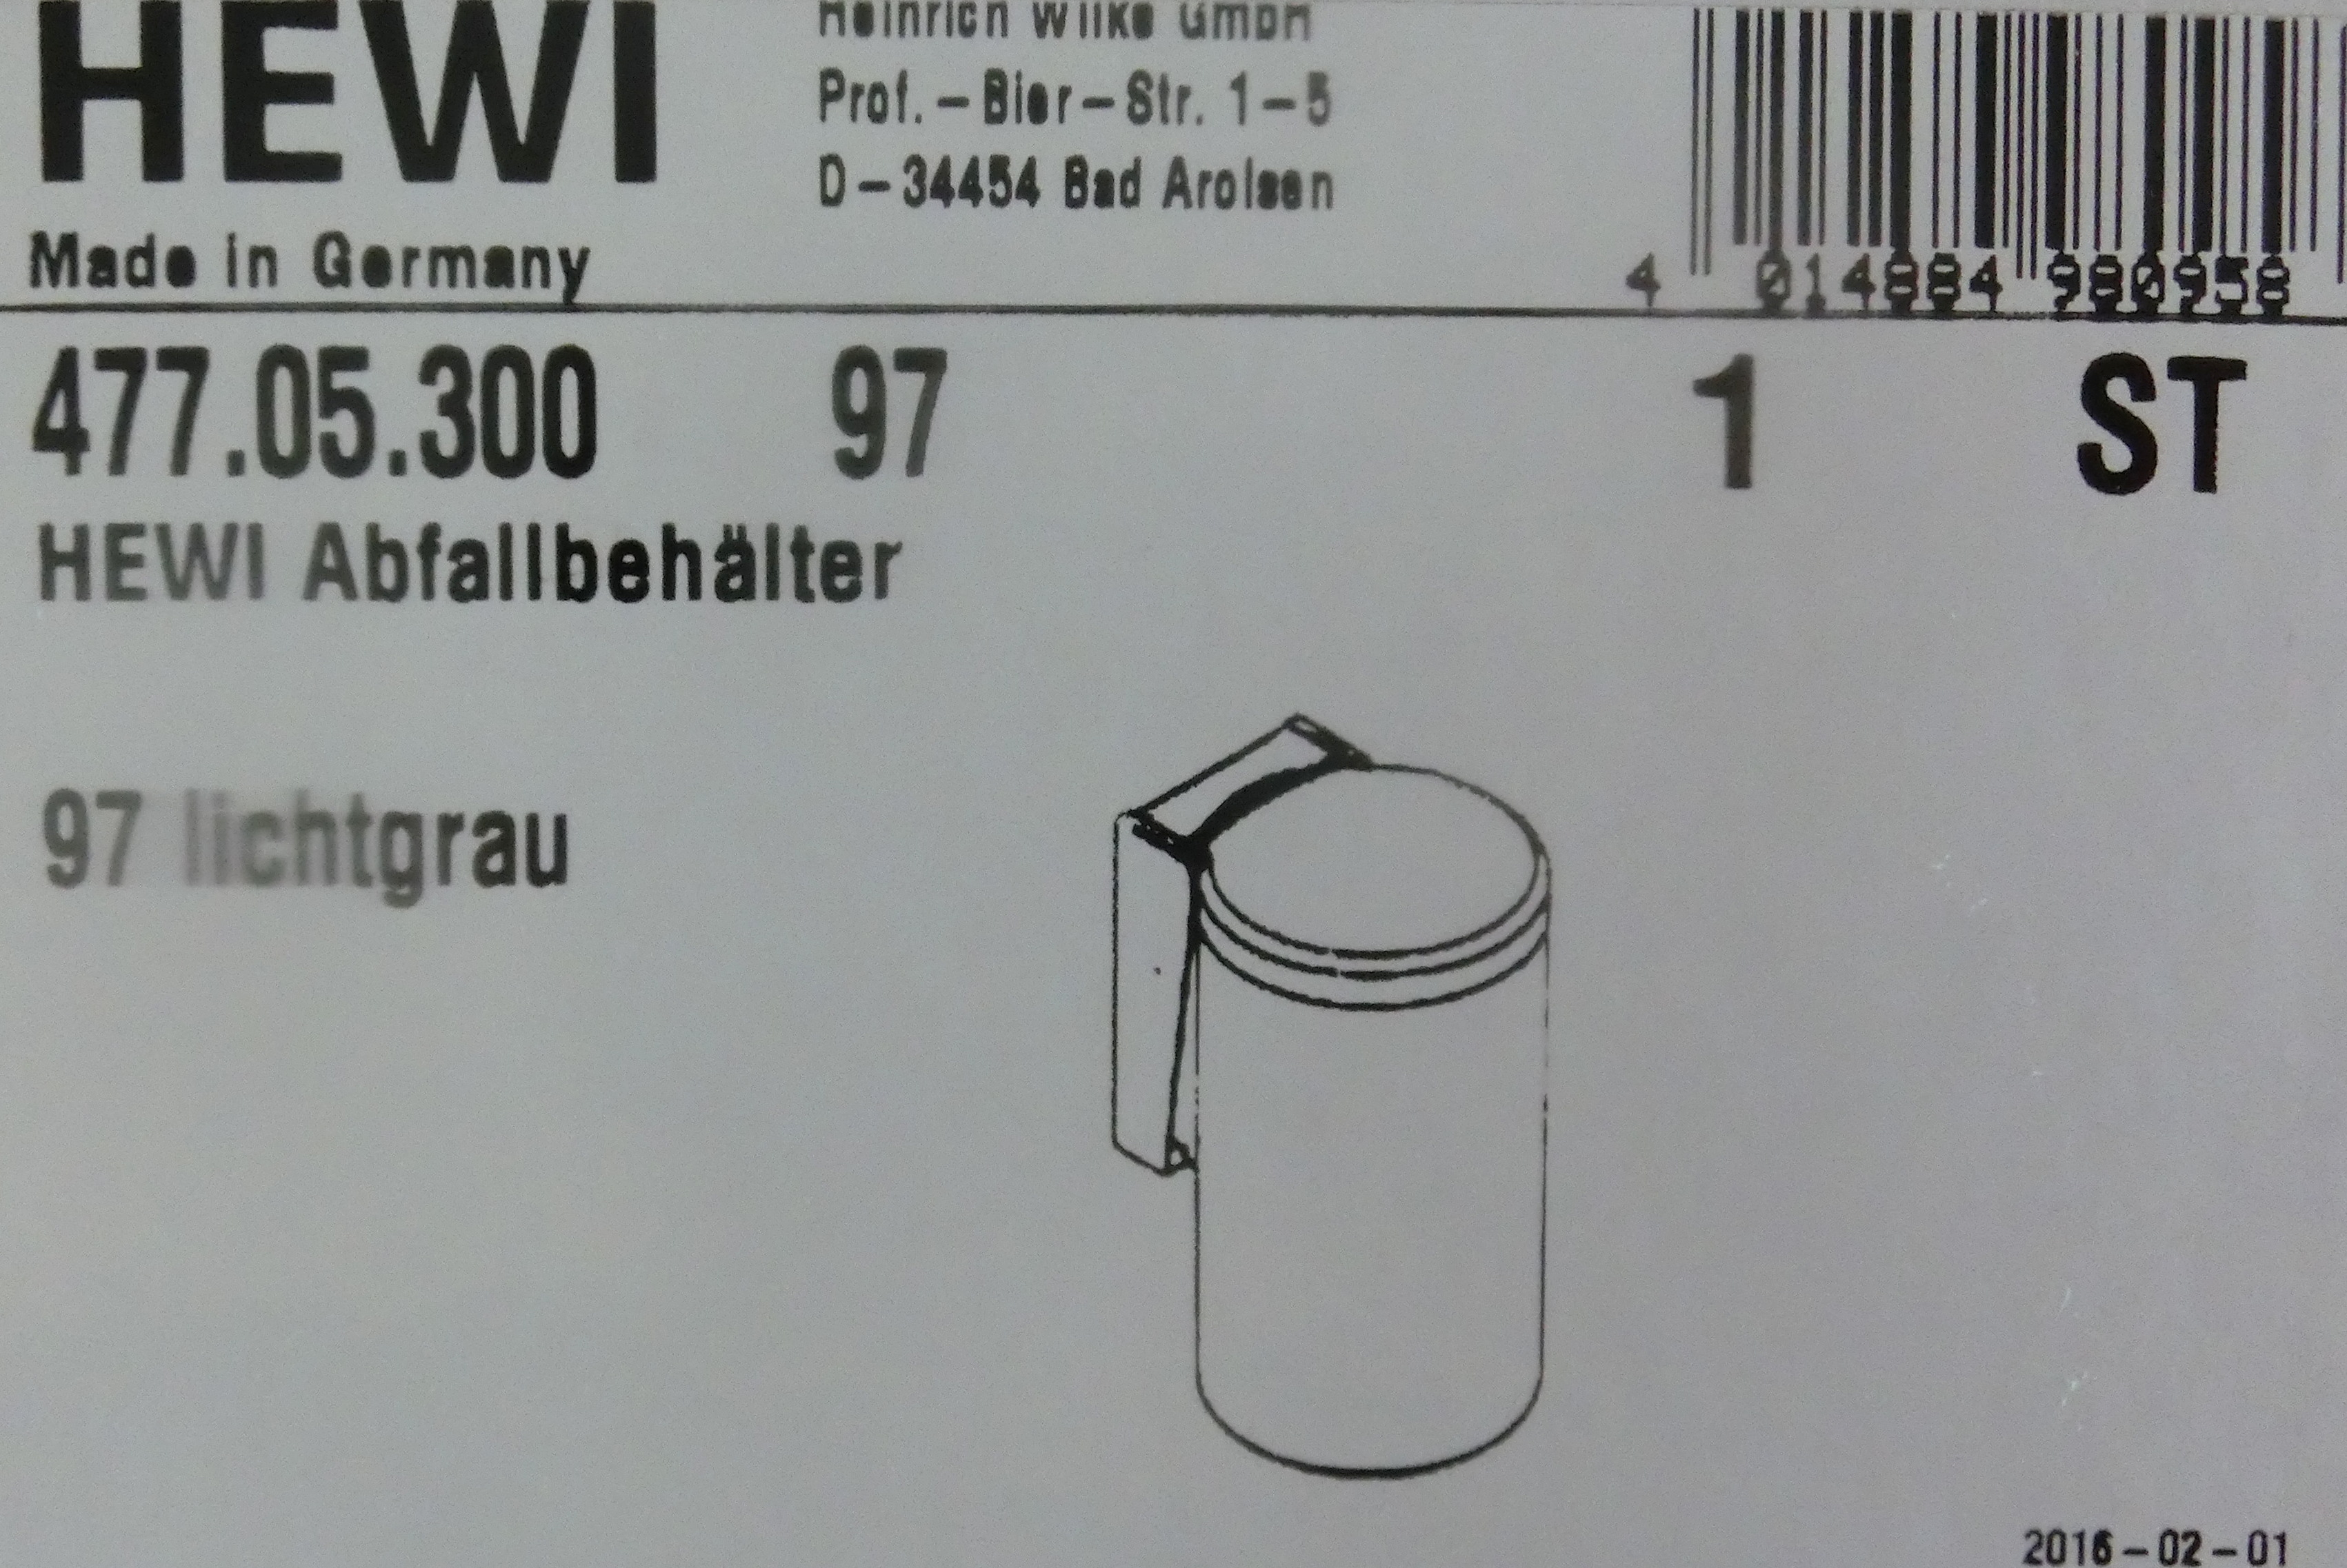 Hewi Serie 477 Abfallbehälter tiefschwarz; 477.05.300-90 